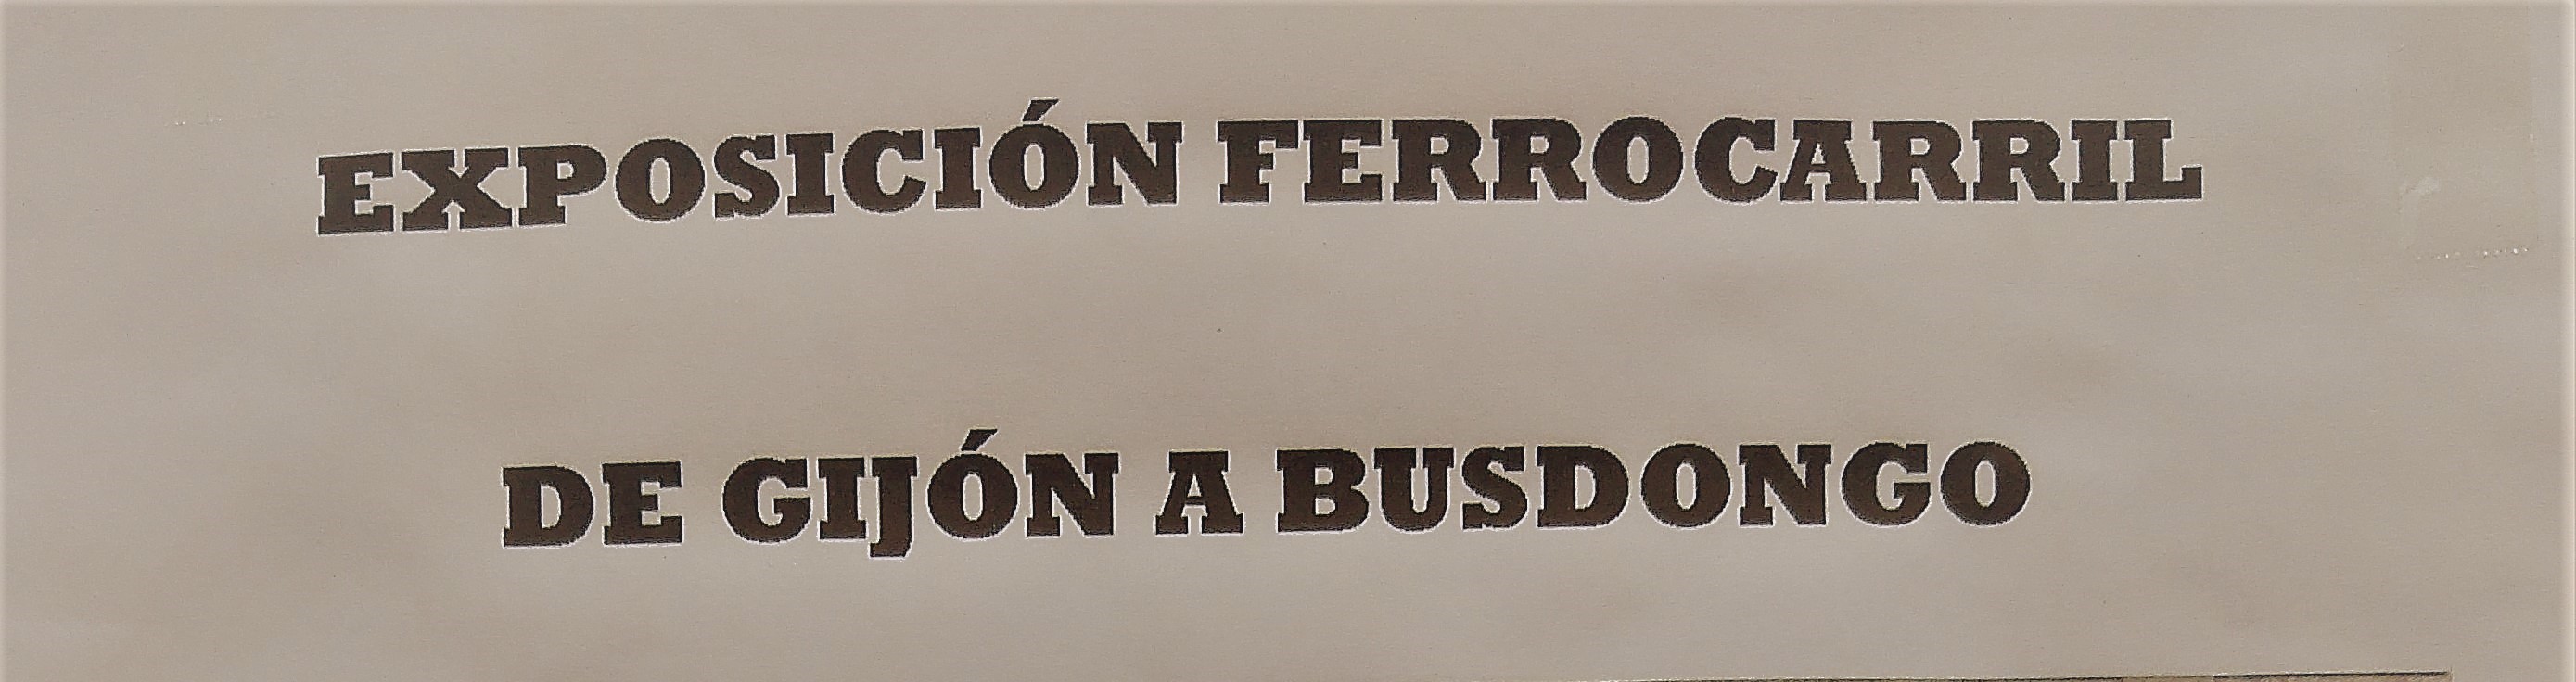 Exposición ferrocarril Gijón - Busdongo (Ujo)_02